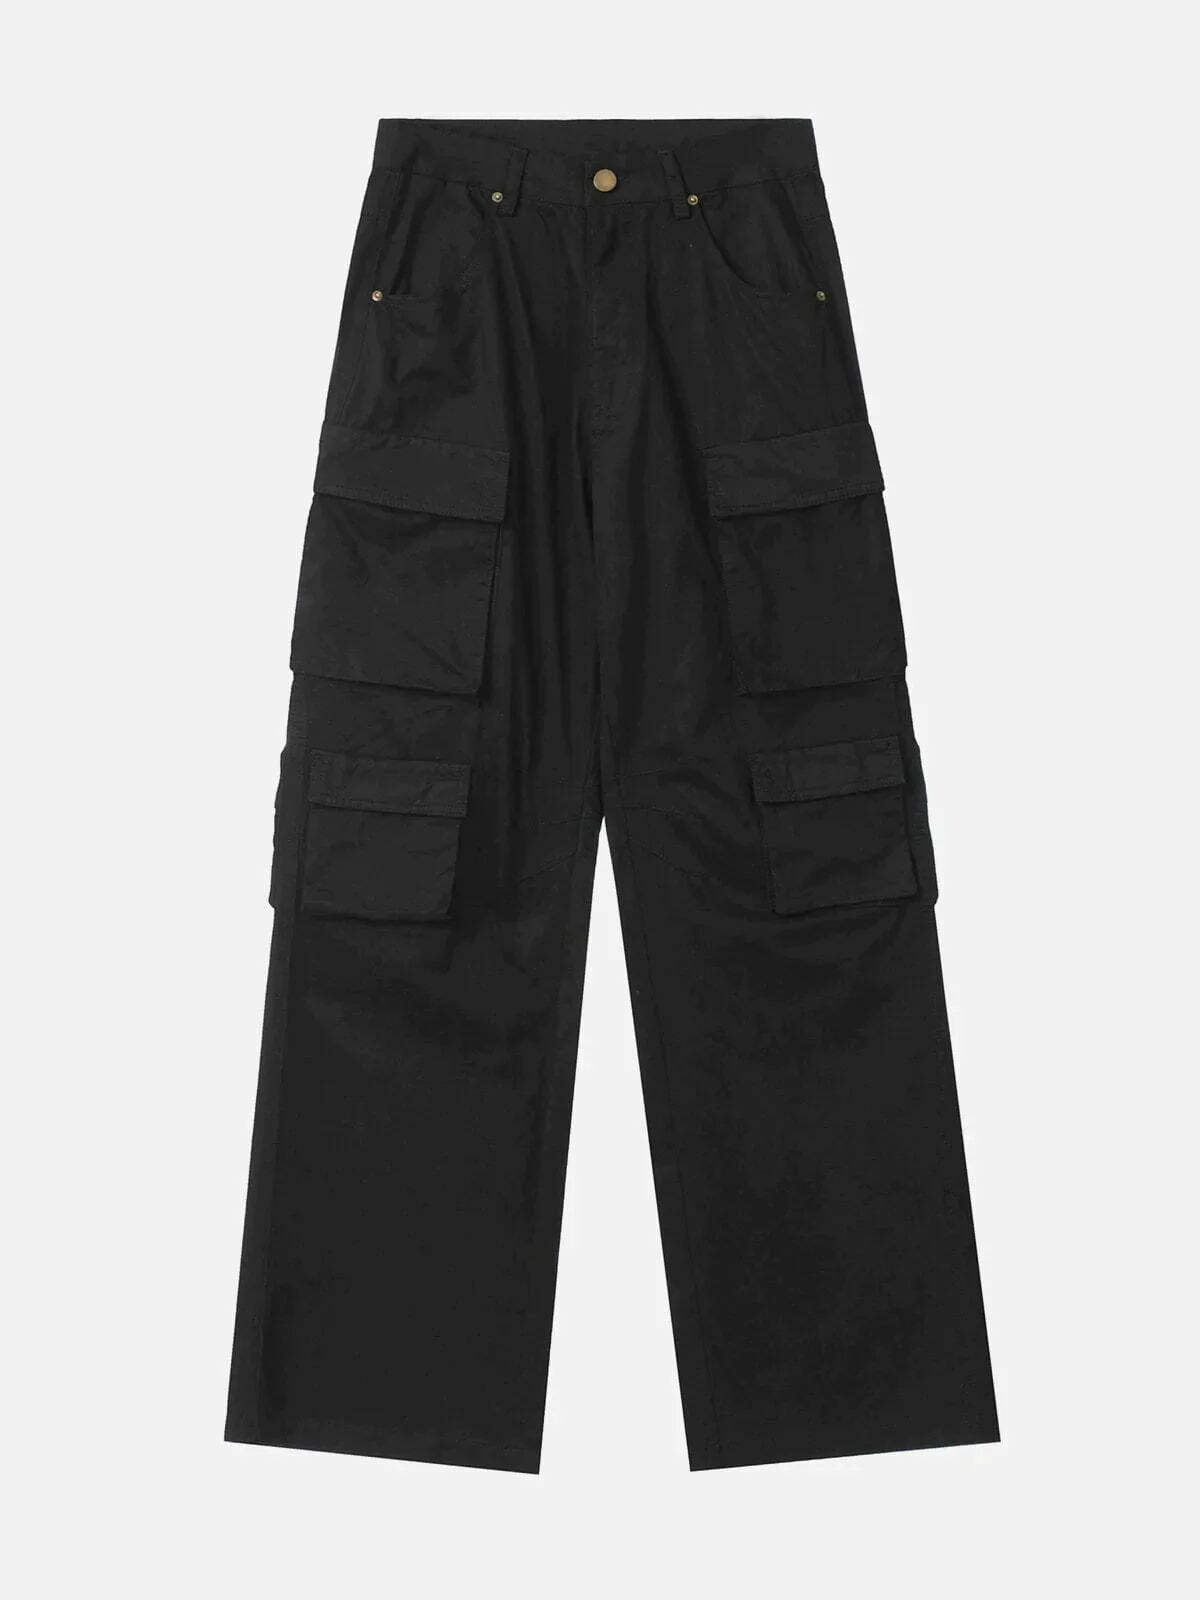 loose fit solid color pants effortlessly chic & versatile 4848